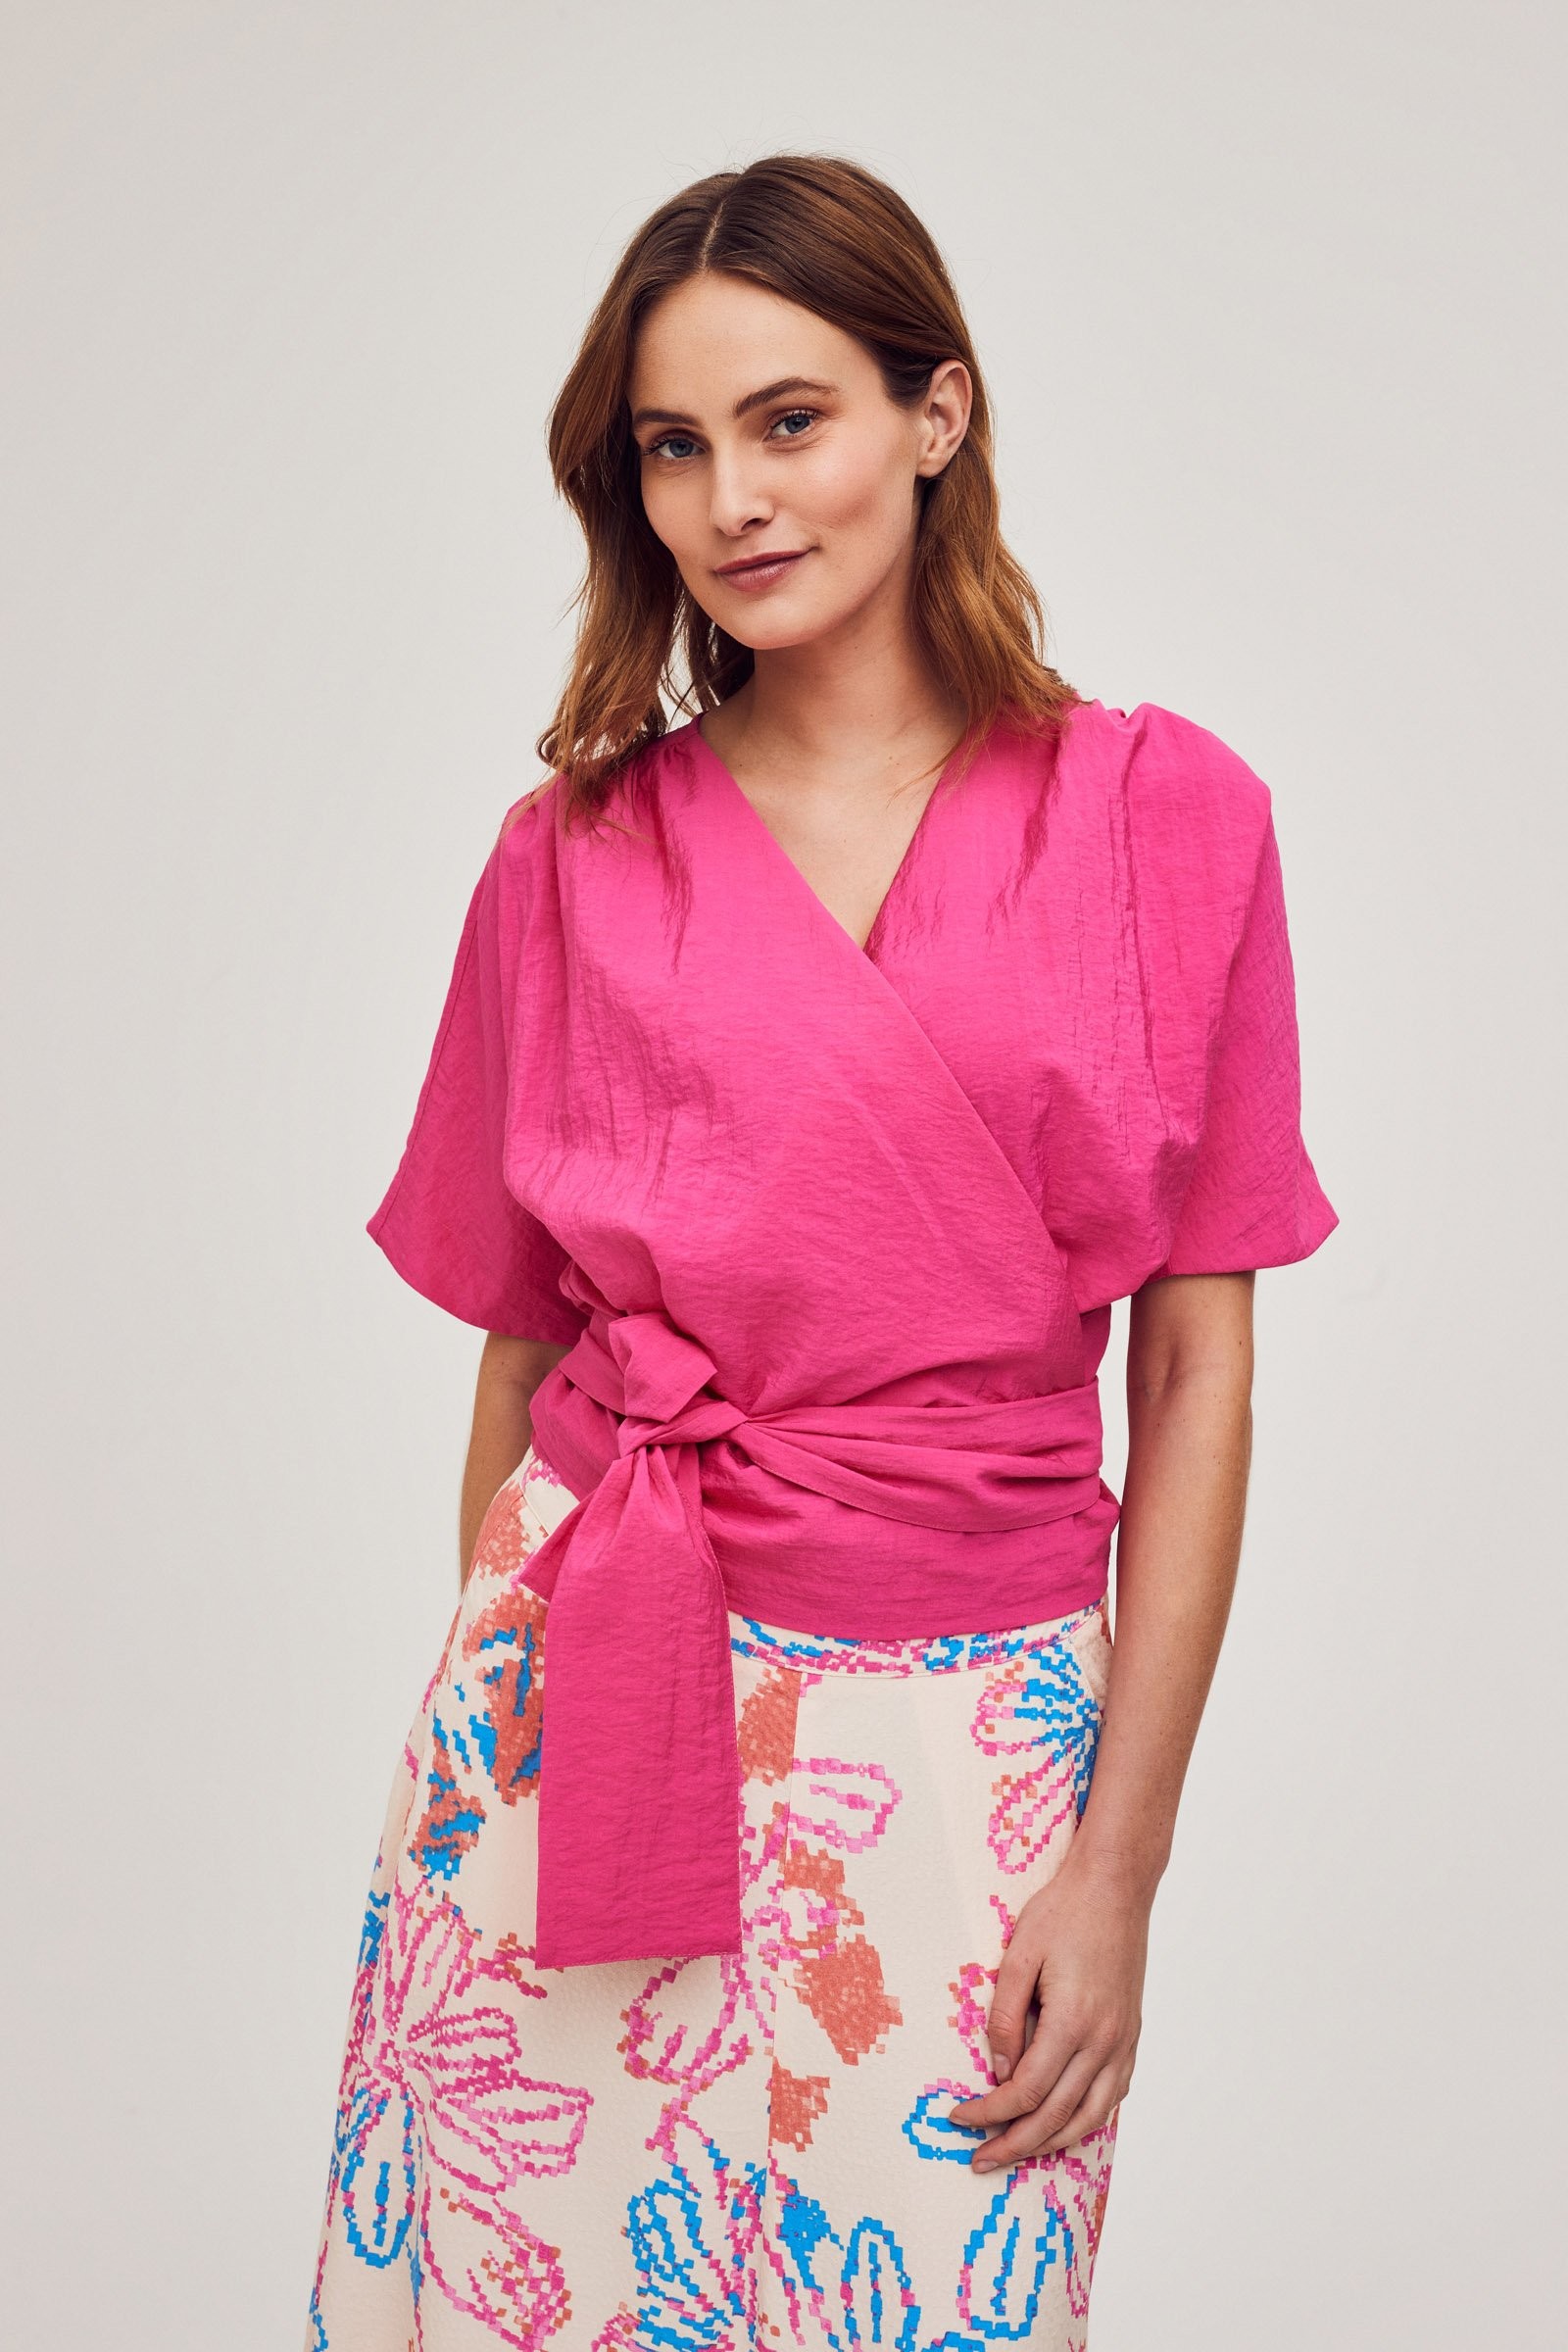 CKS Dames - IDIOMA - blouse long sleeves - bright pink